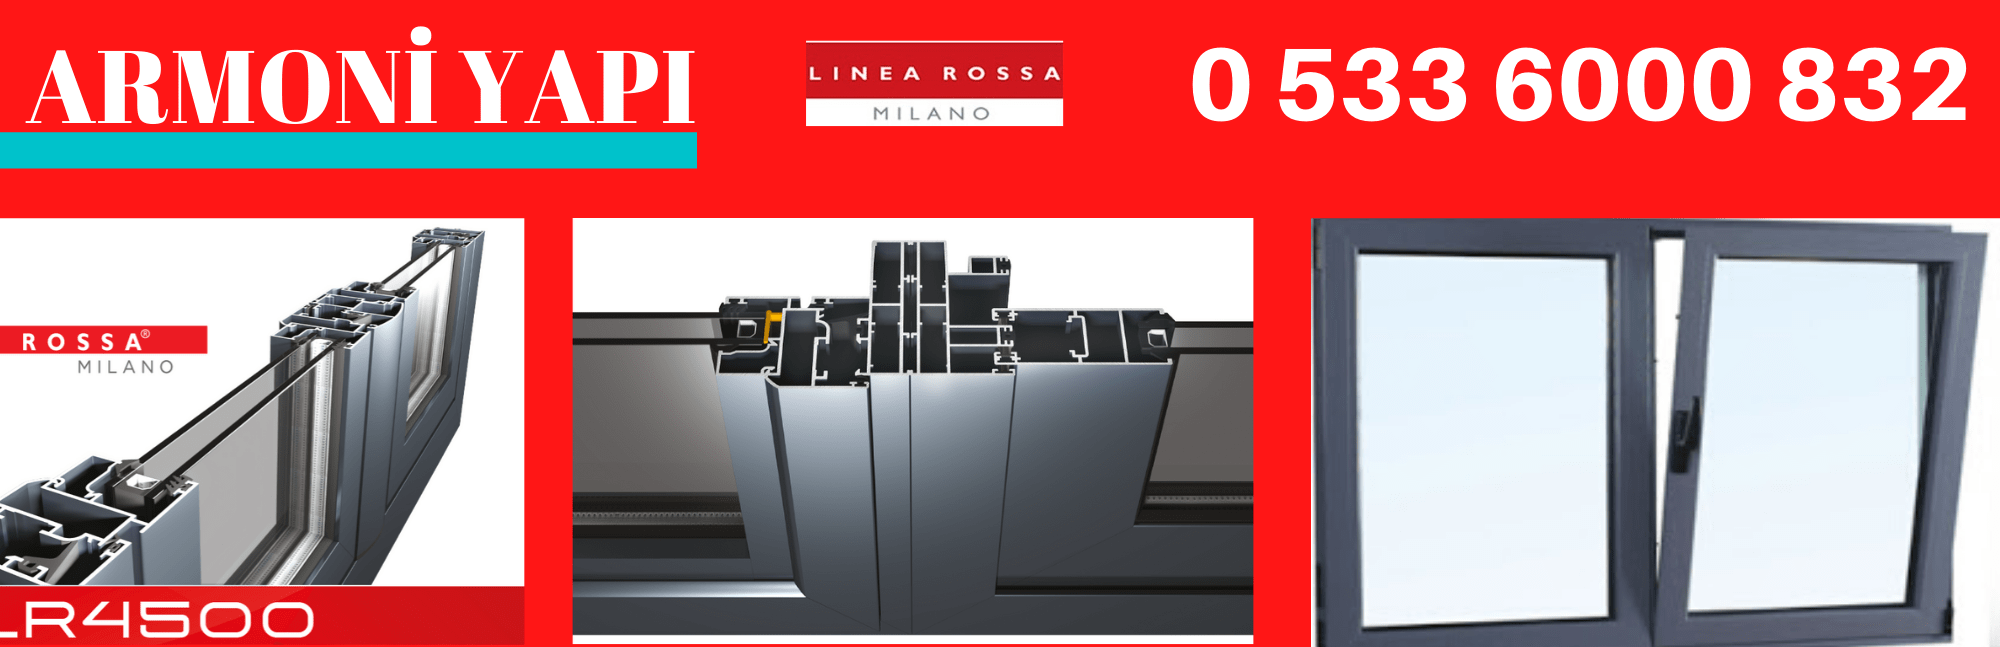 Linea Rossa LR-4500 yalıtımsız açılır doğrama